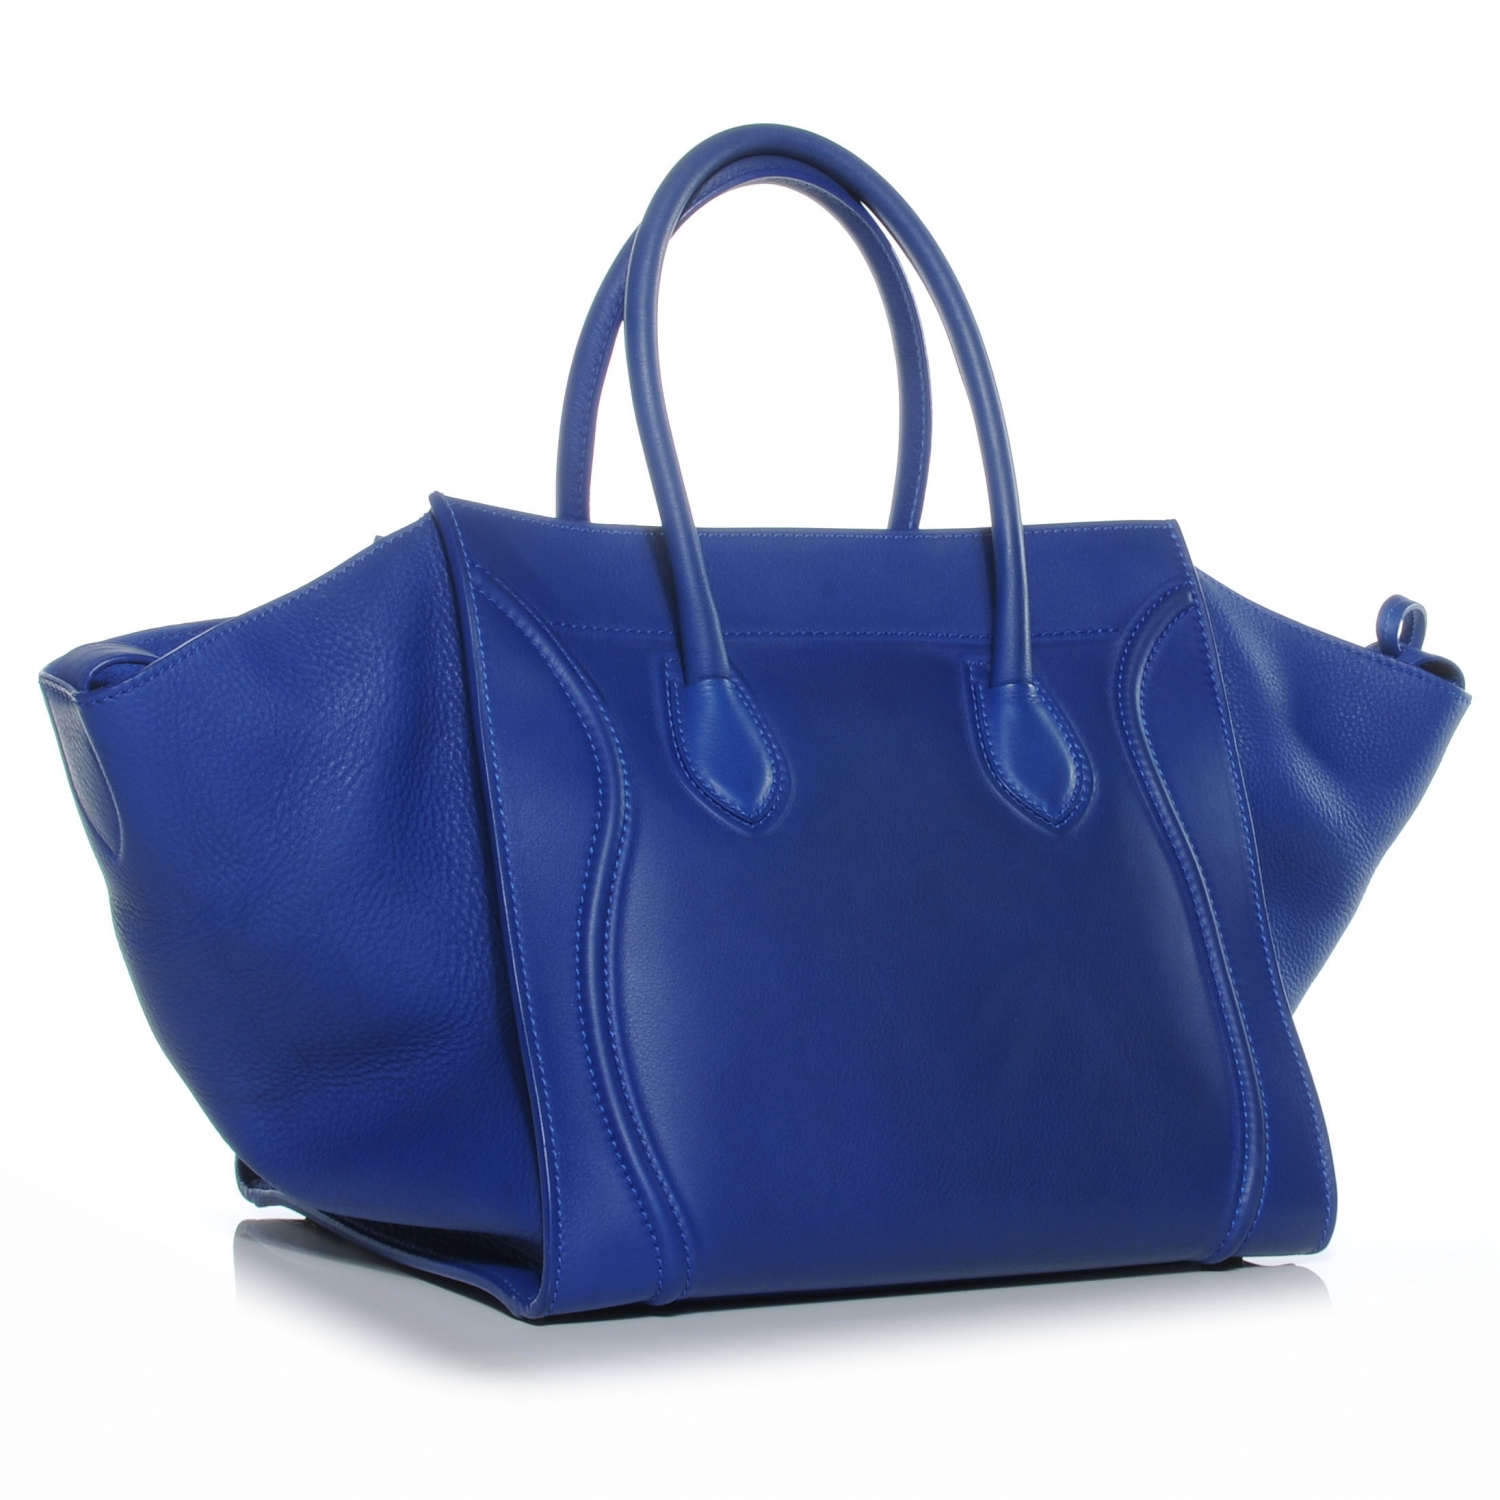 CELINE Smooth Leather Medium Phantom Luggage Cobalt Blue 43451